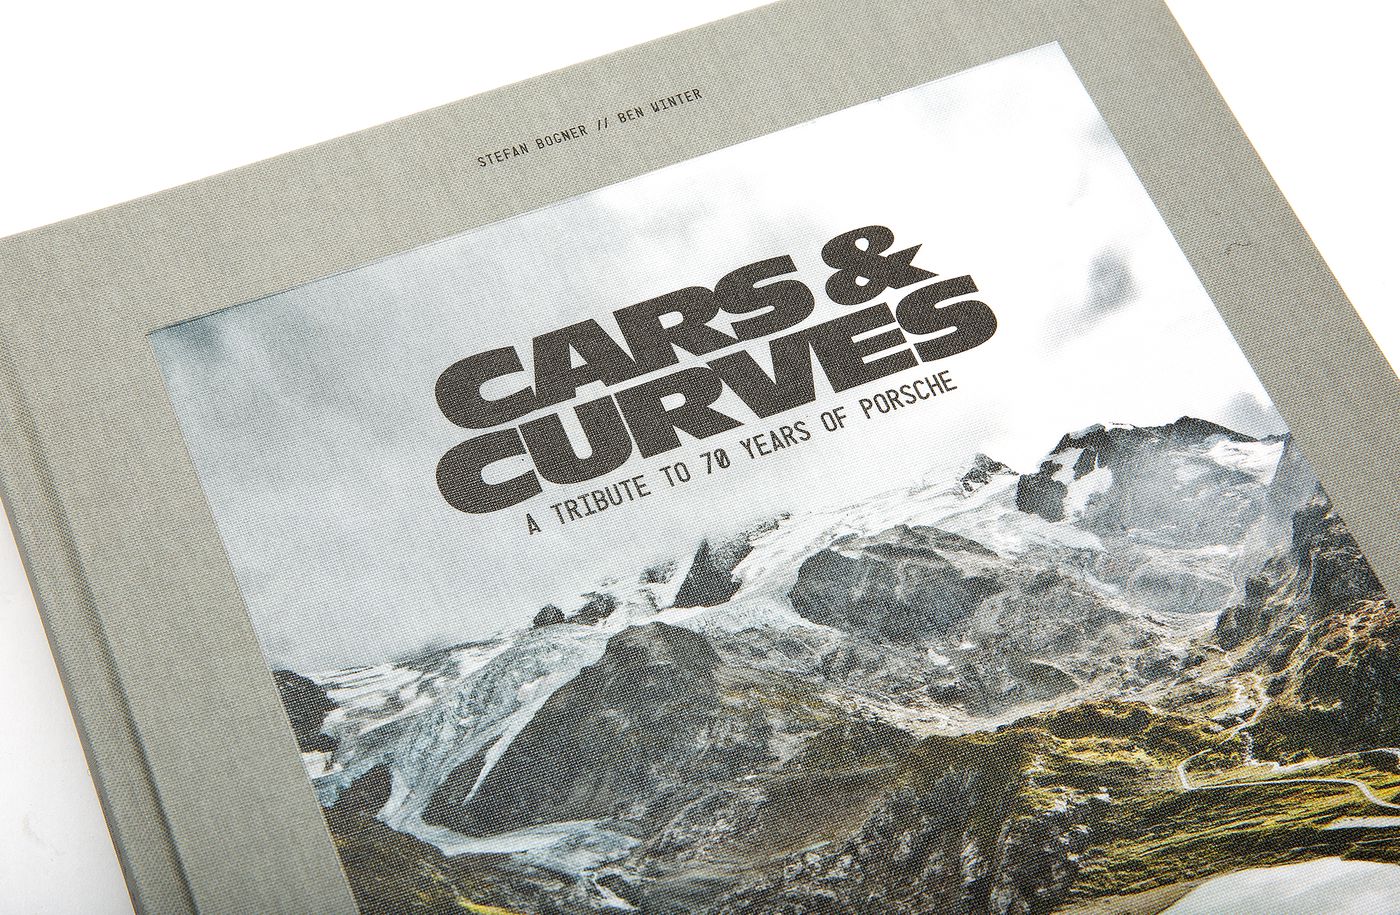 Cars & Curves